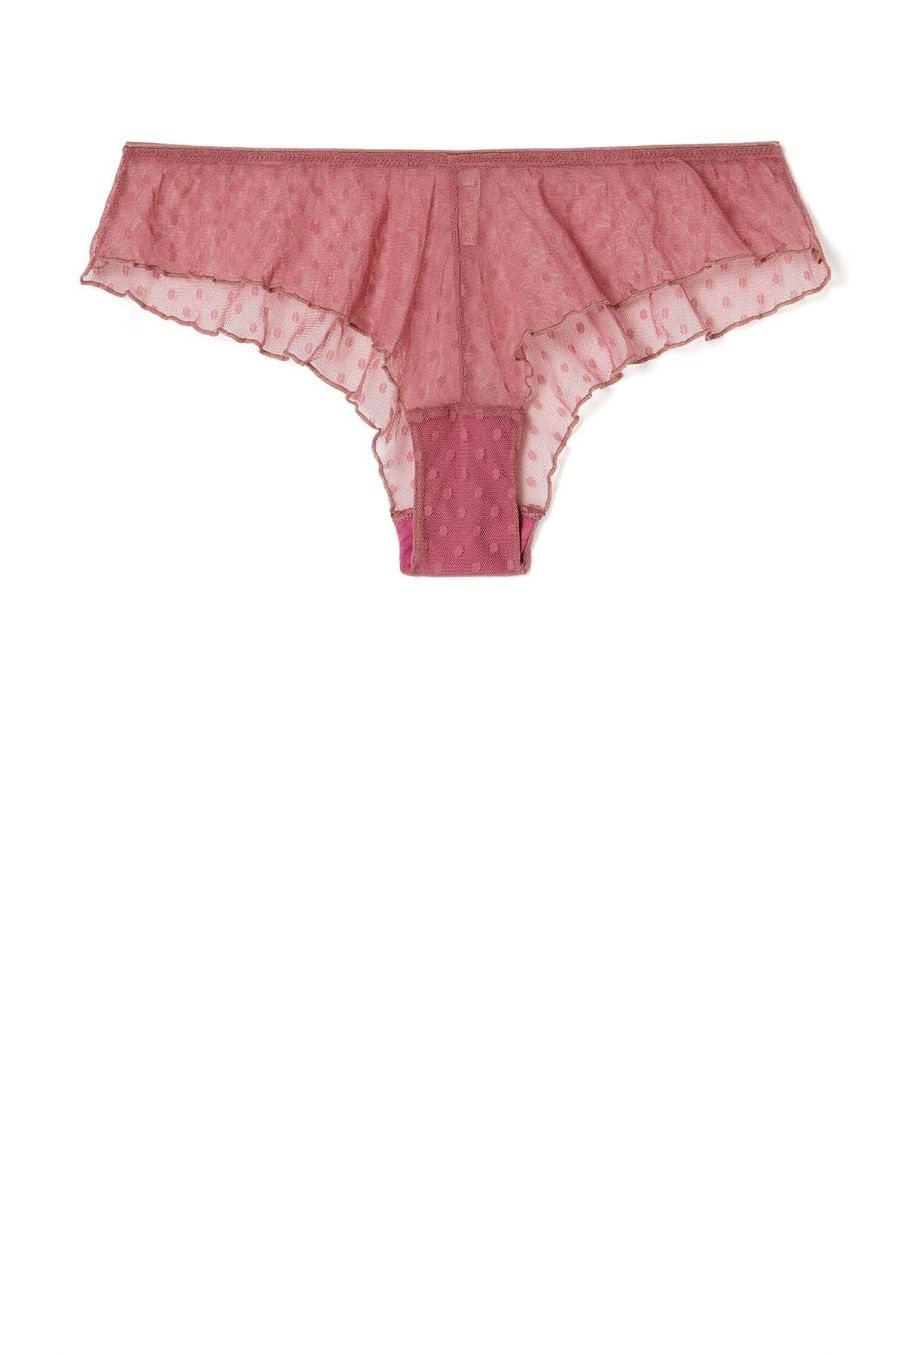 women-underwear-lolly-raspberry